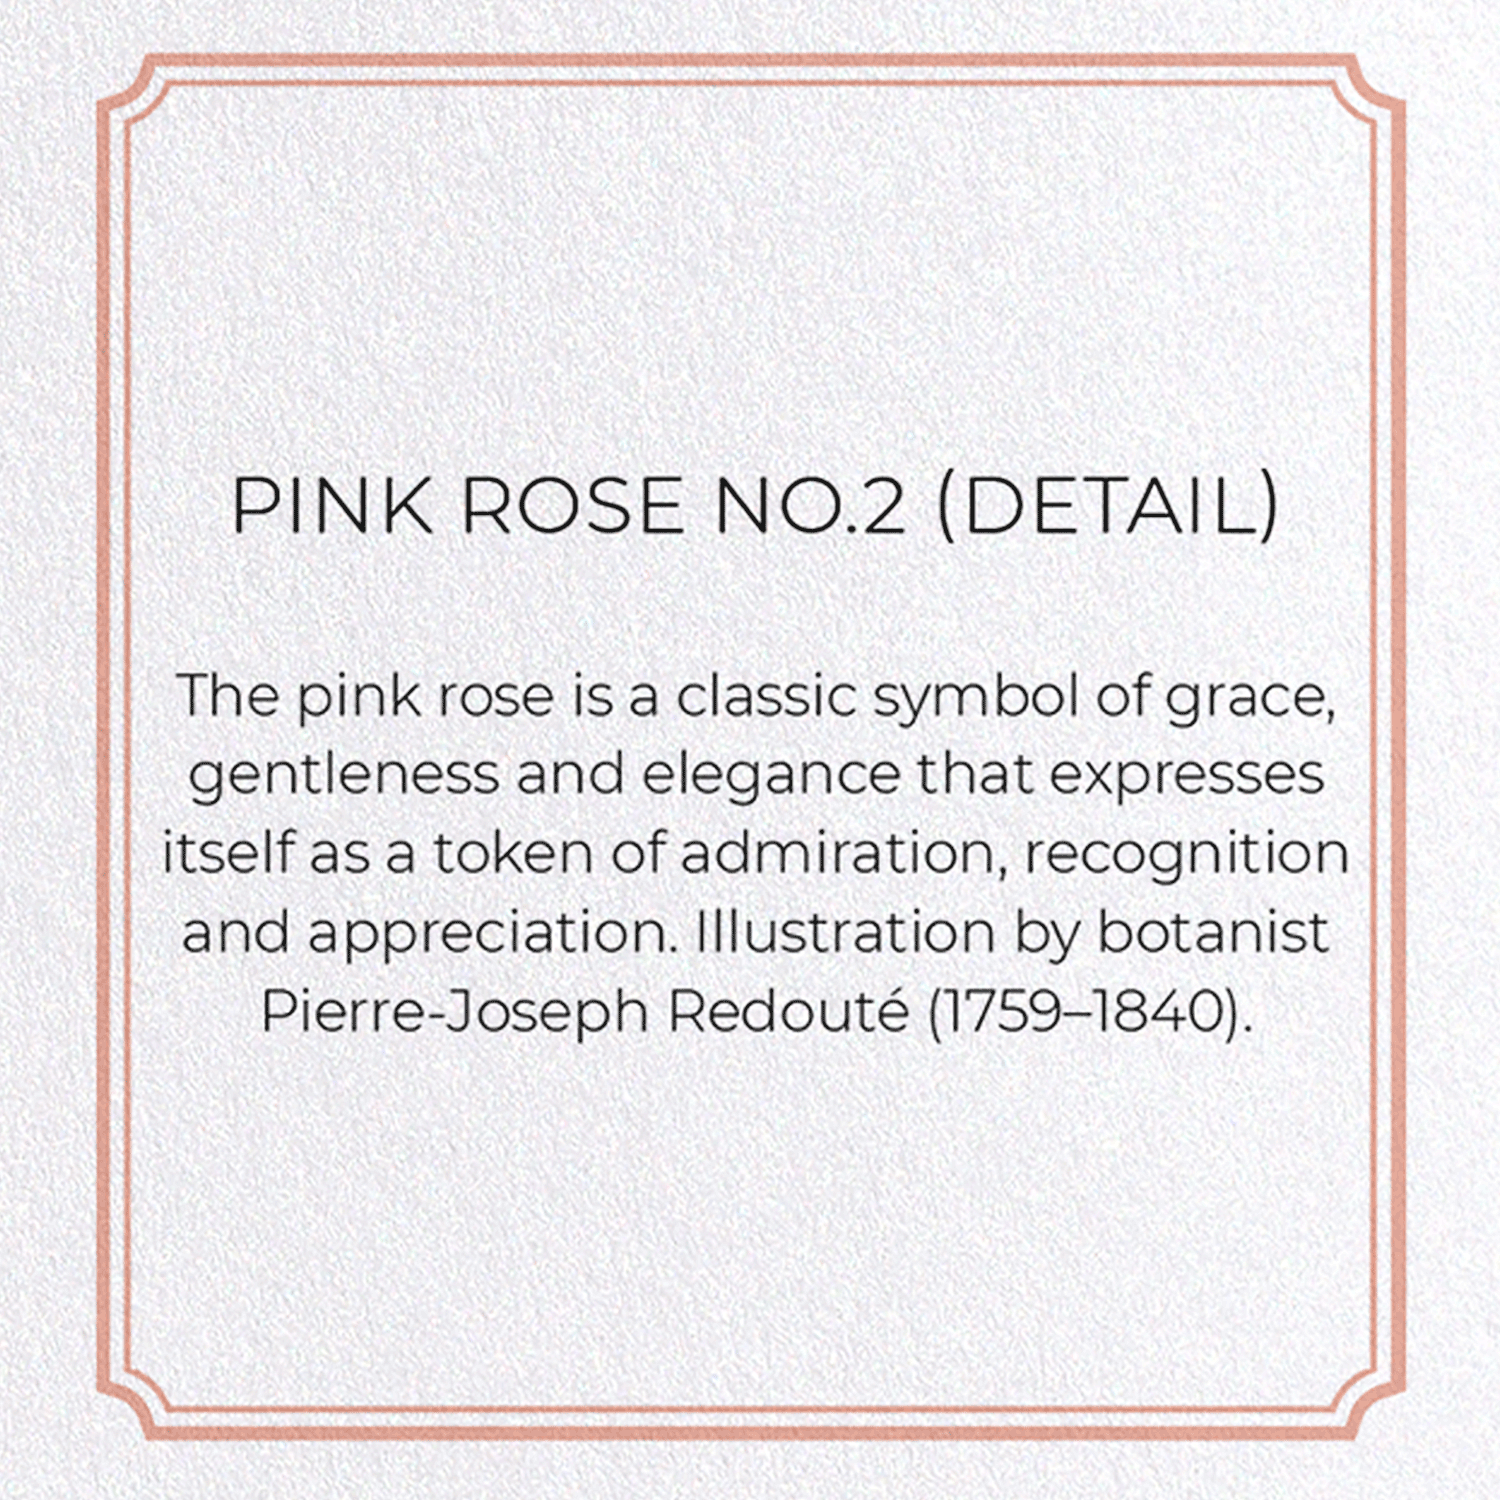 PINK ROSE NO.2